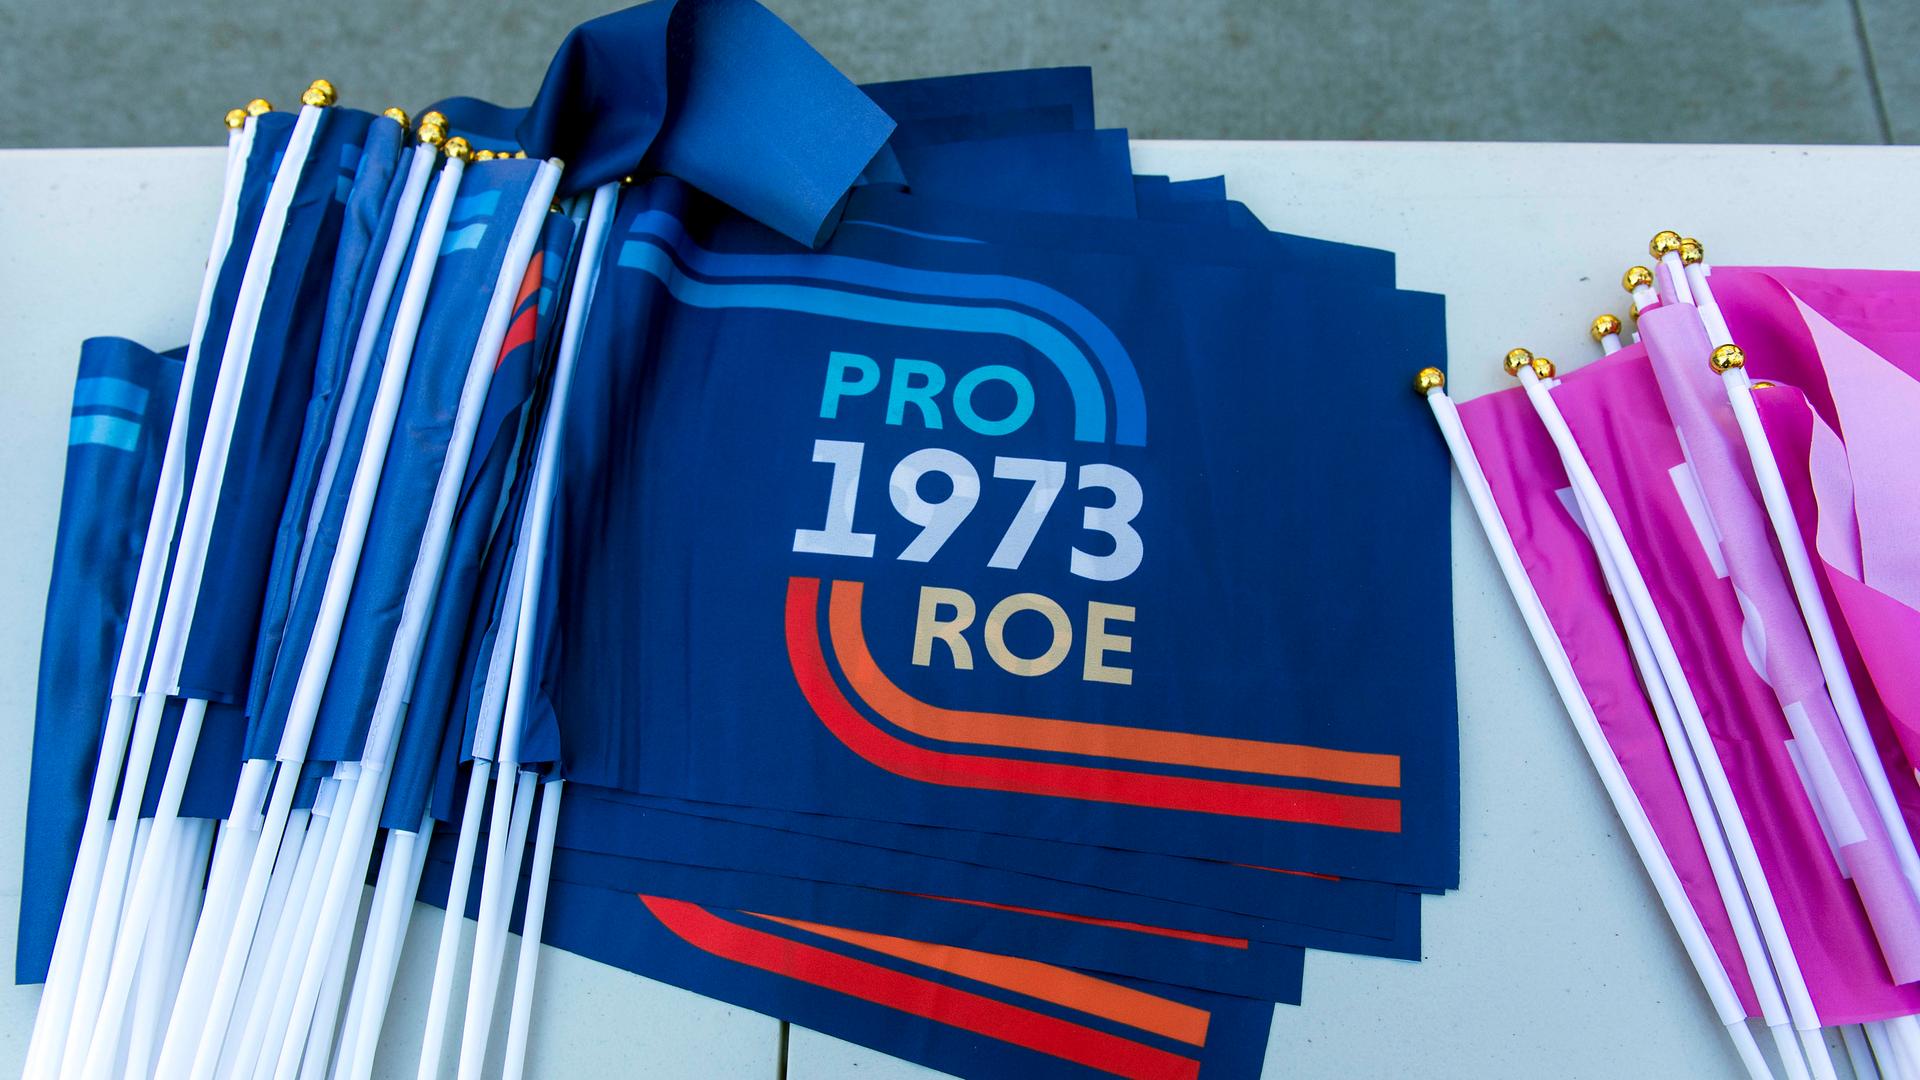 Eine Fahne liegt auf einem Tisch. Auf ihr steht "Pro Roe 1973".